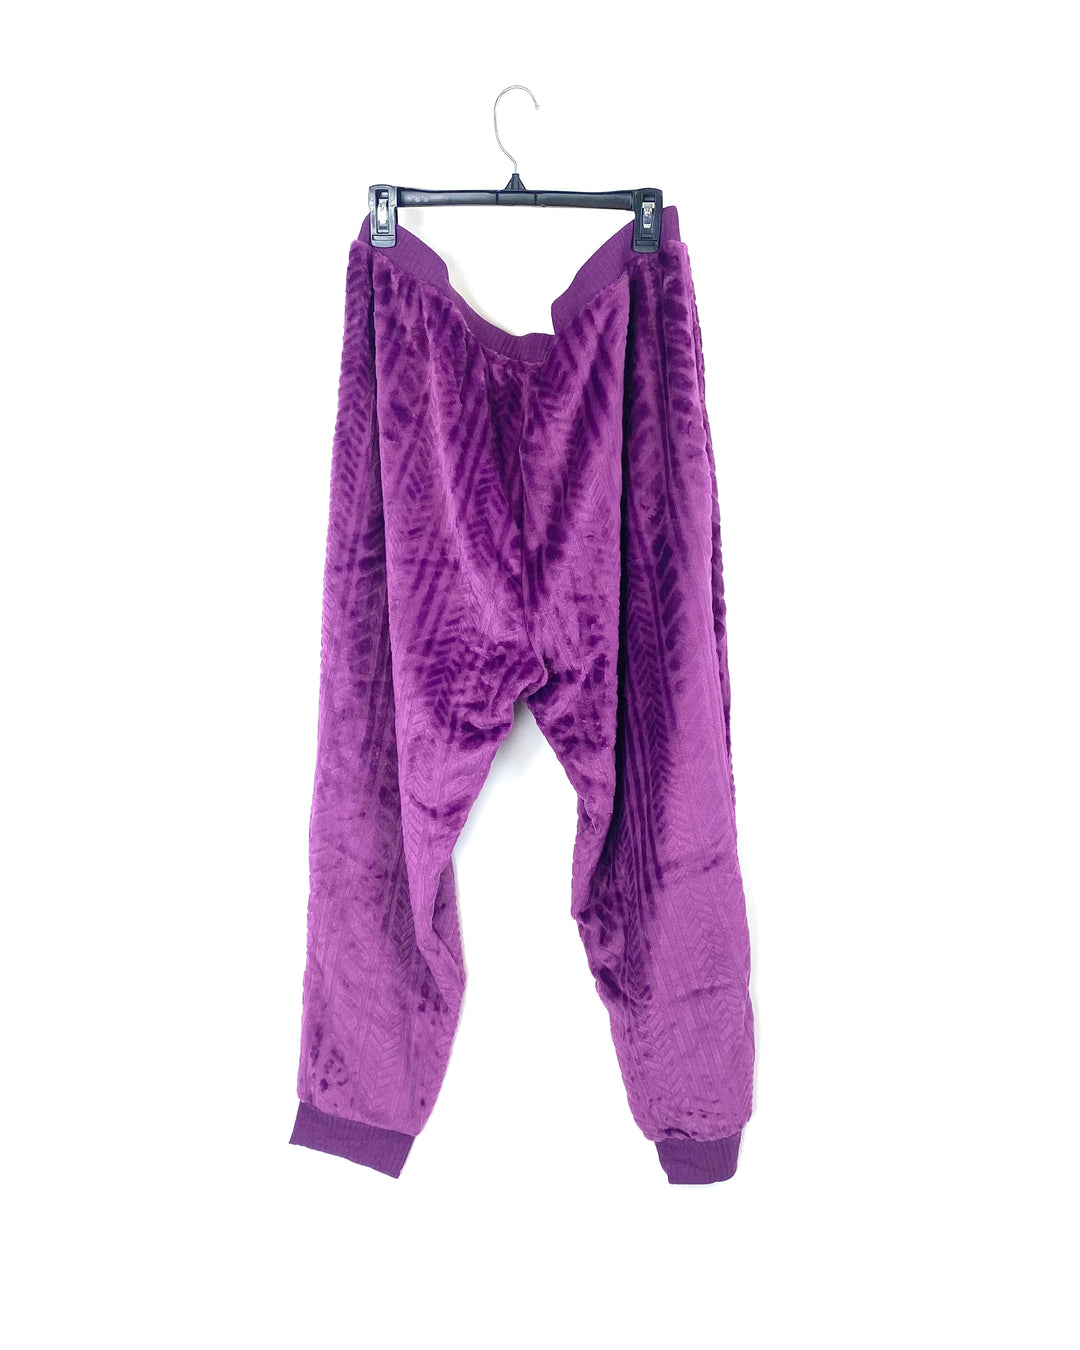 Purple Fleece Pants - Size 6/8